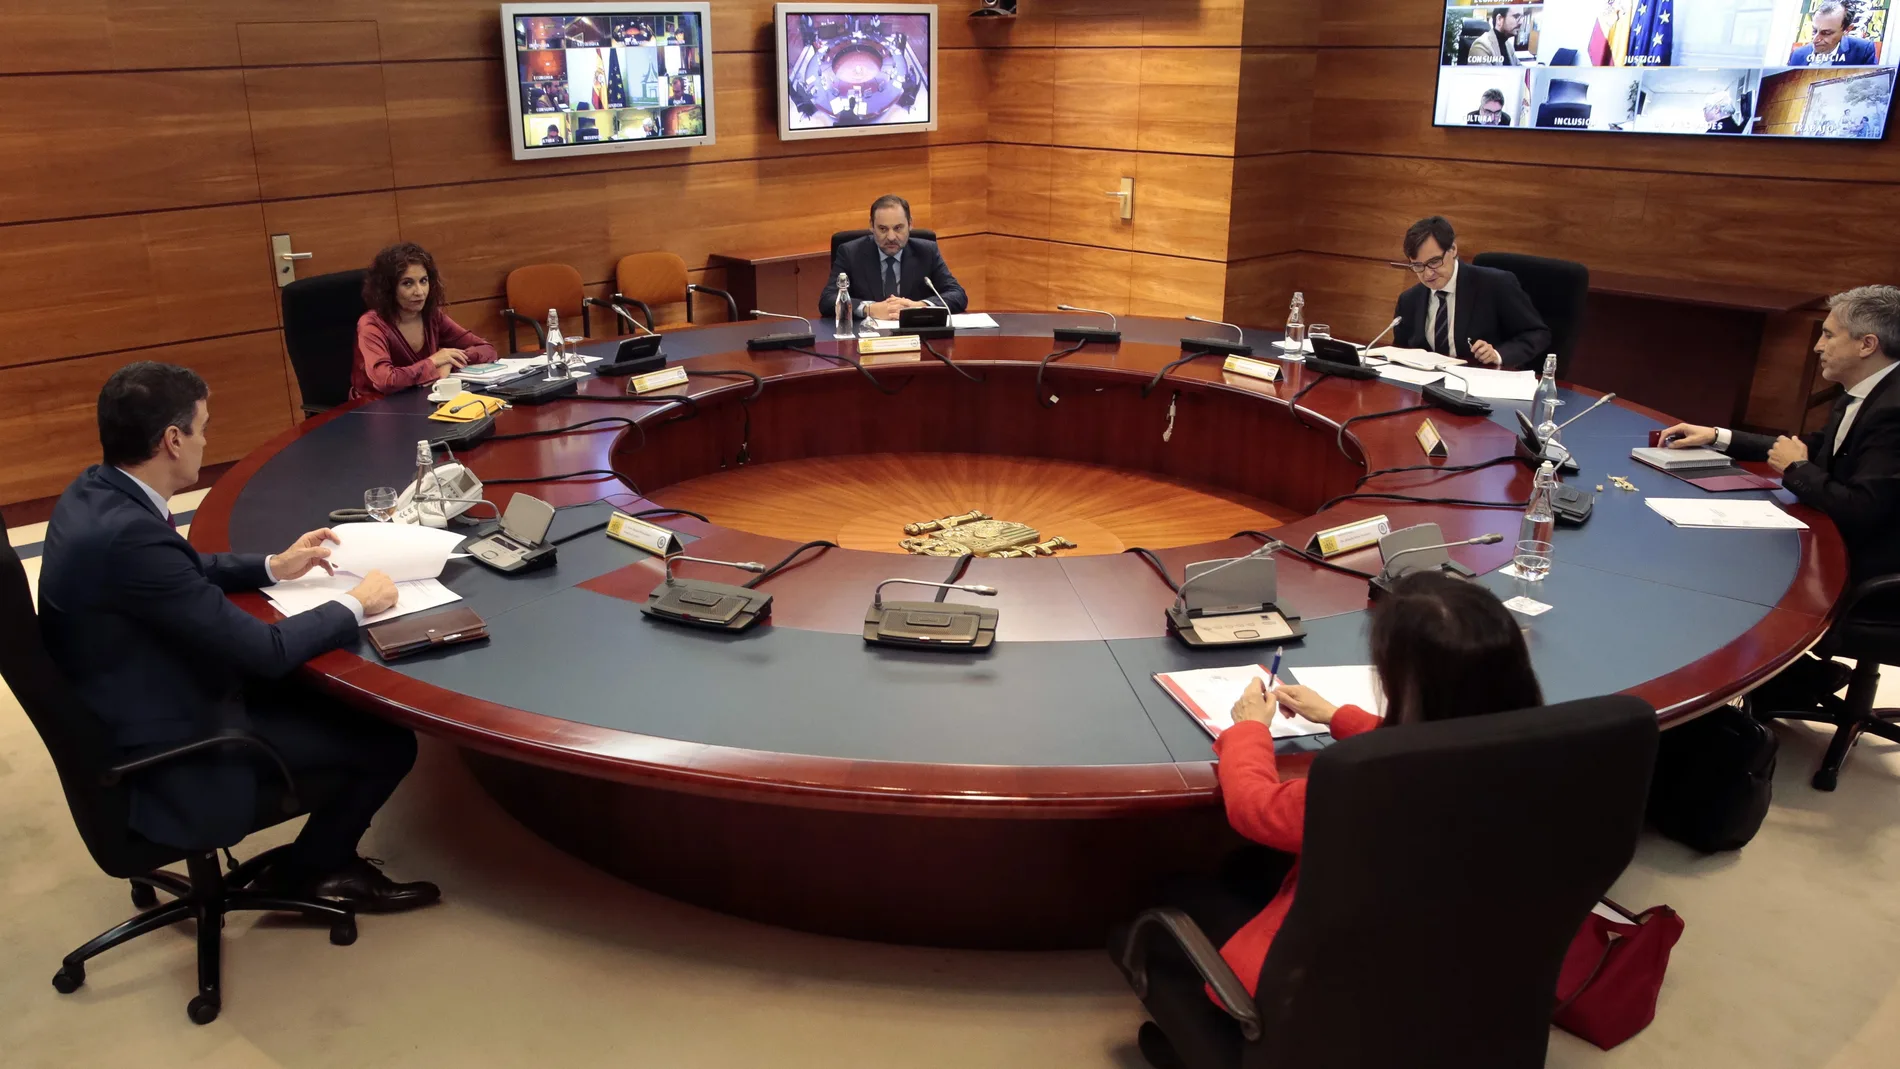 Spanish cabinet holds extraordinary meeting amid coronavirus pandemic